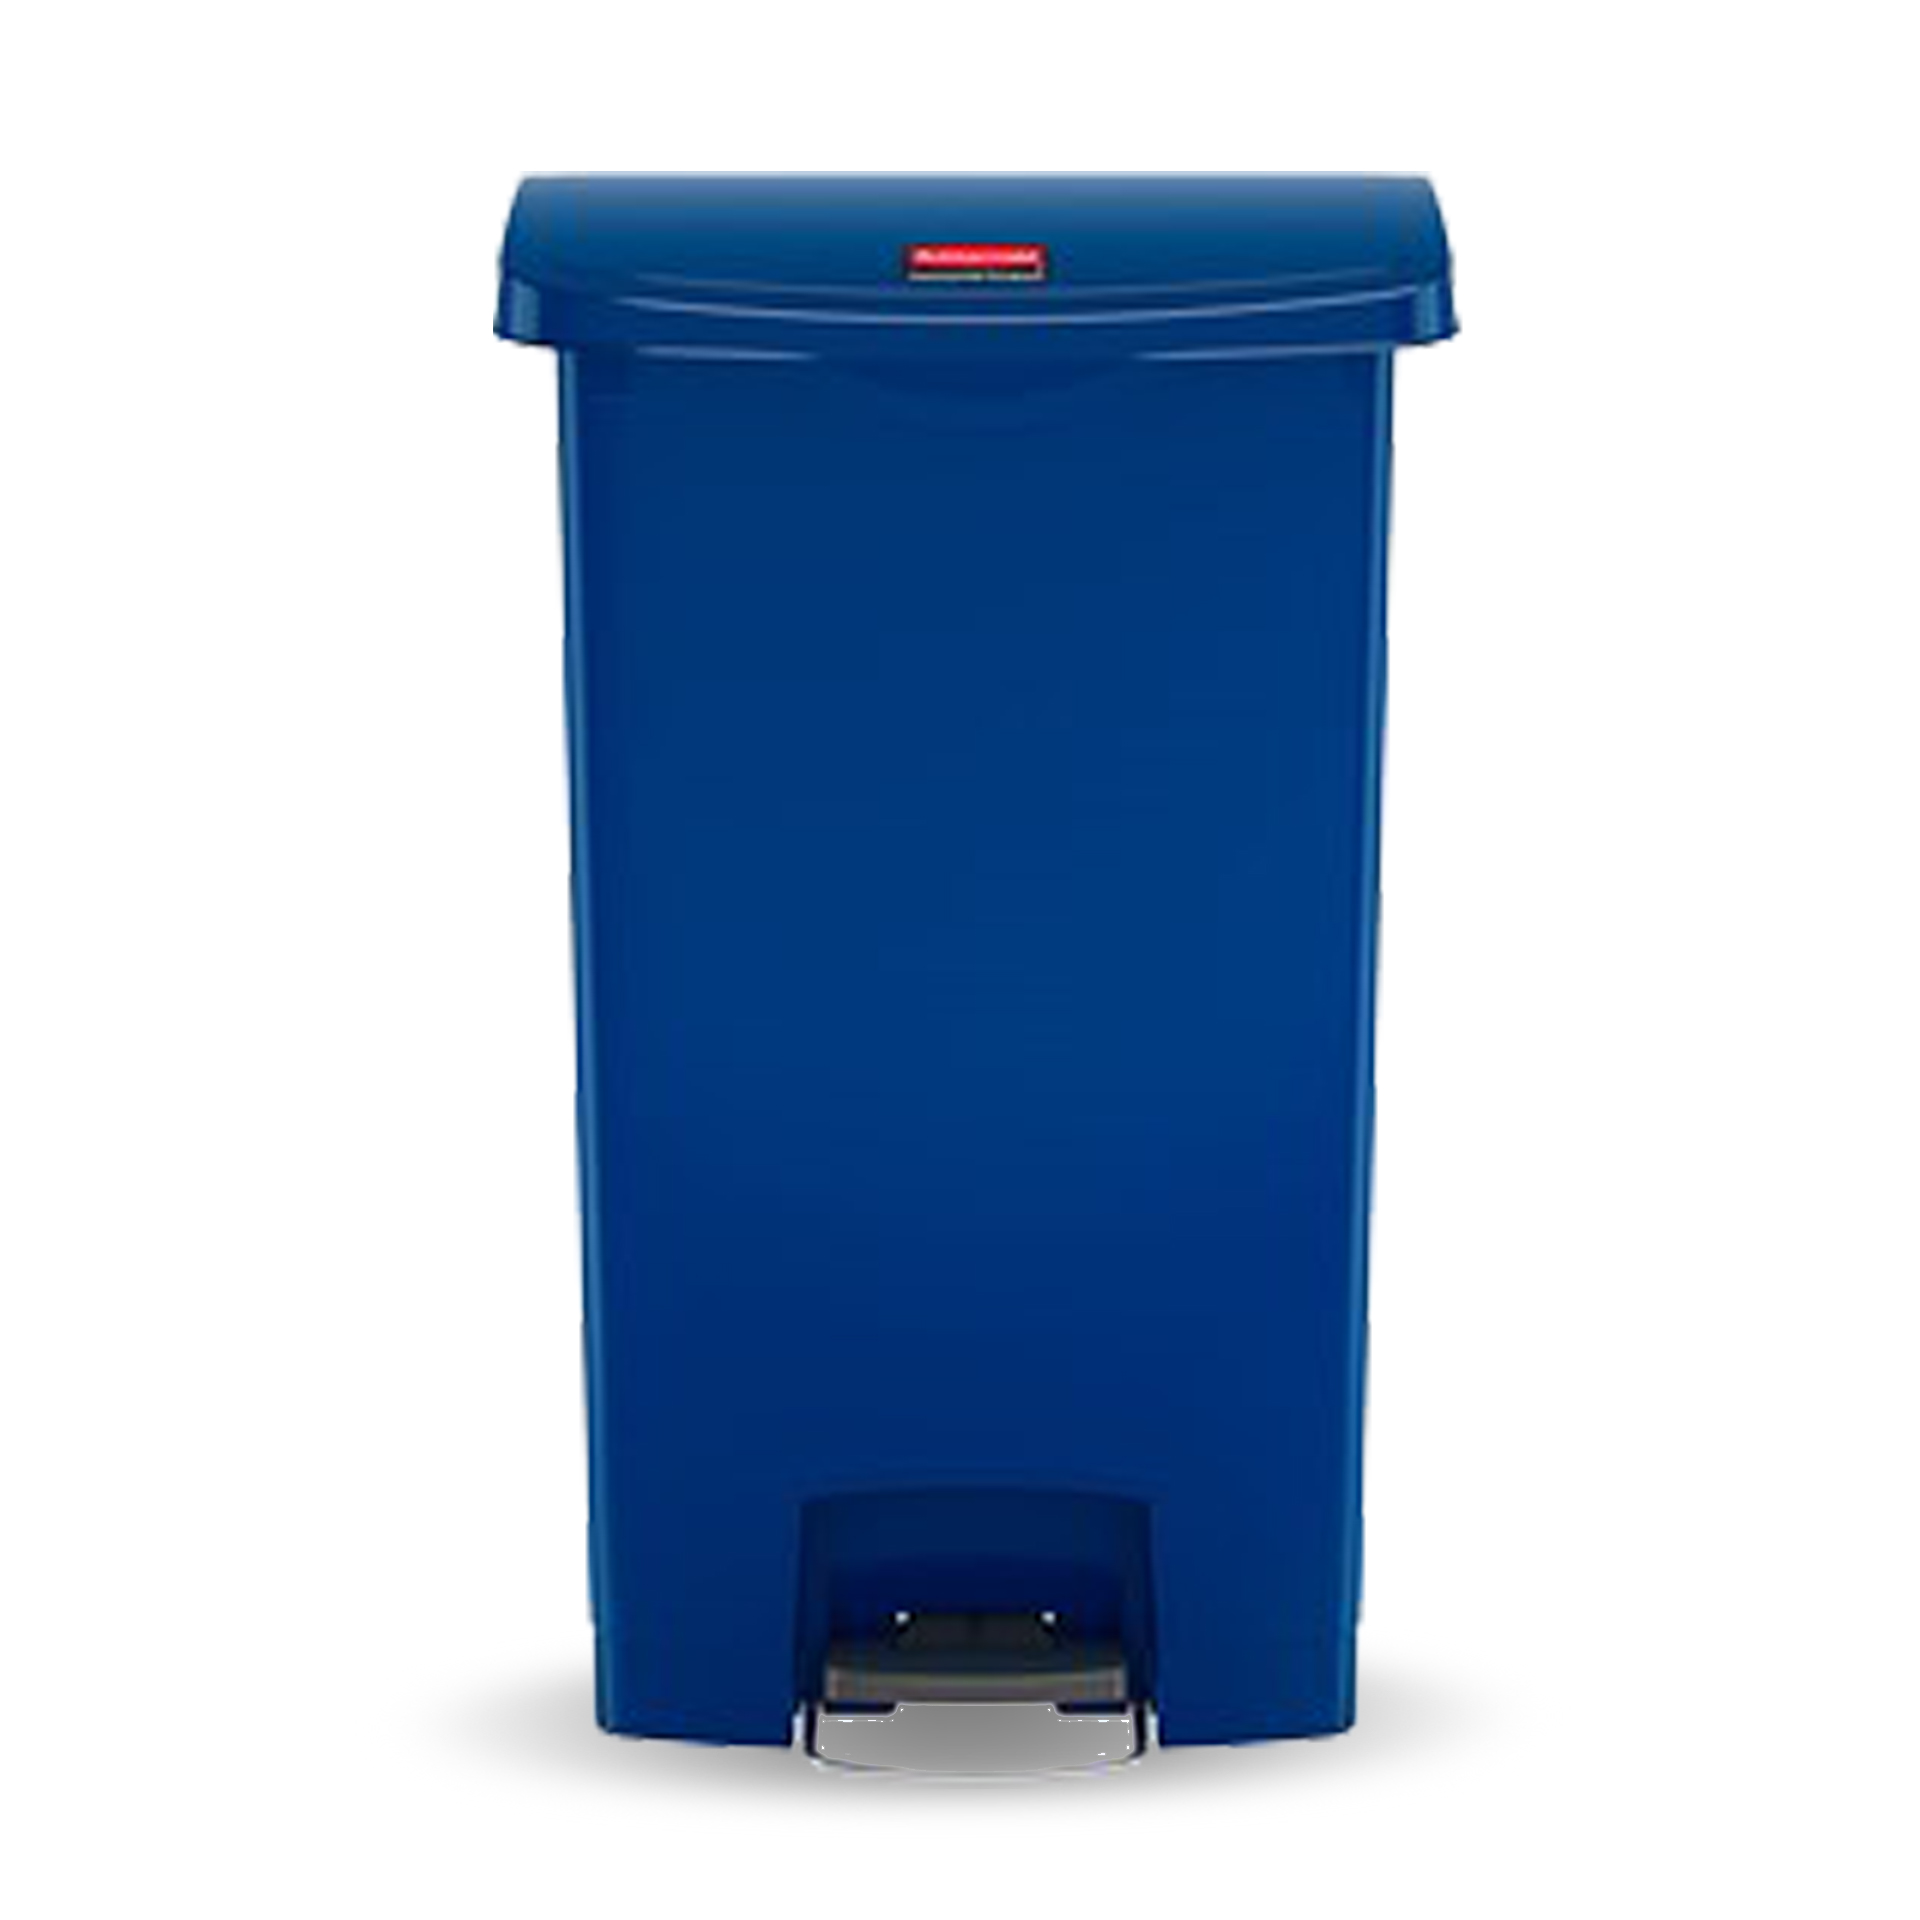 ถังขยะแบบเท้าเหยียบ Slim Jim® Step-On Container ขนาด 90 ลิตร สีน้ำเงิน